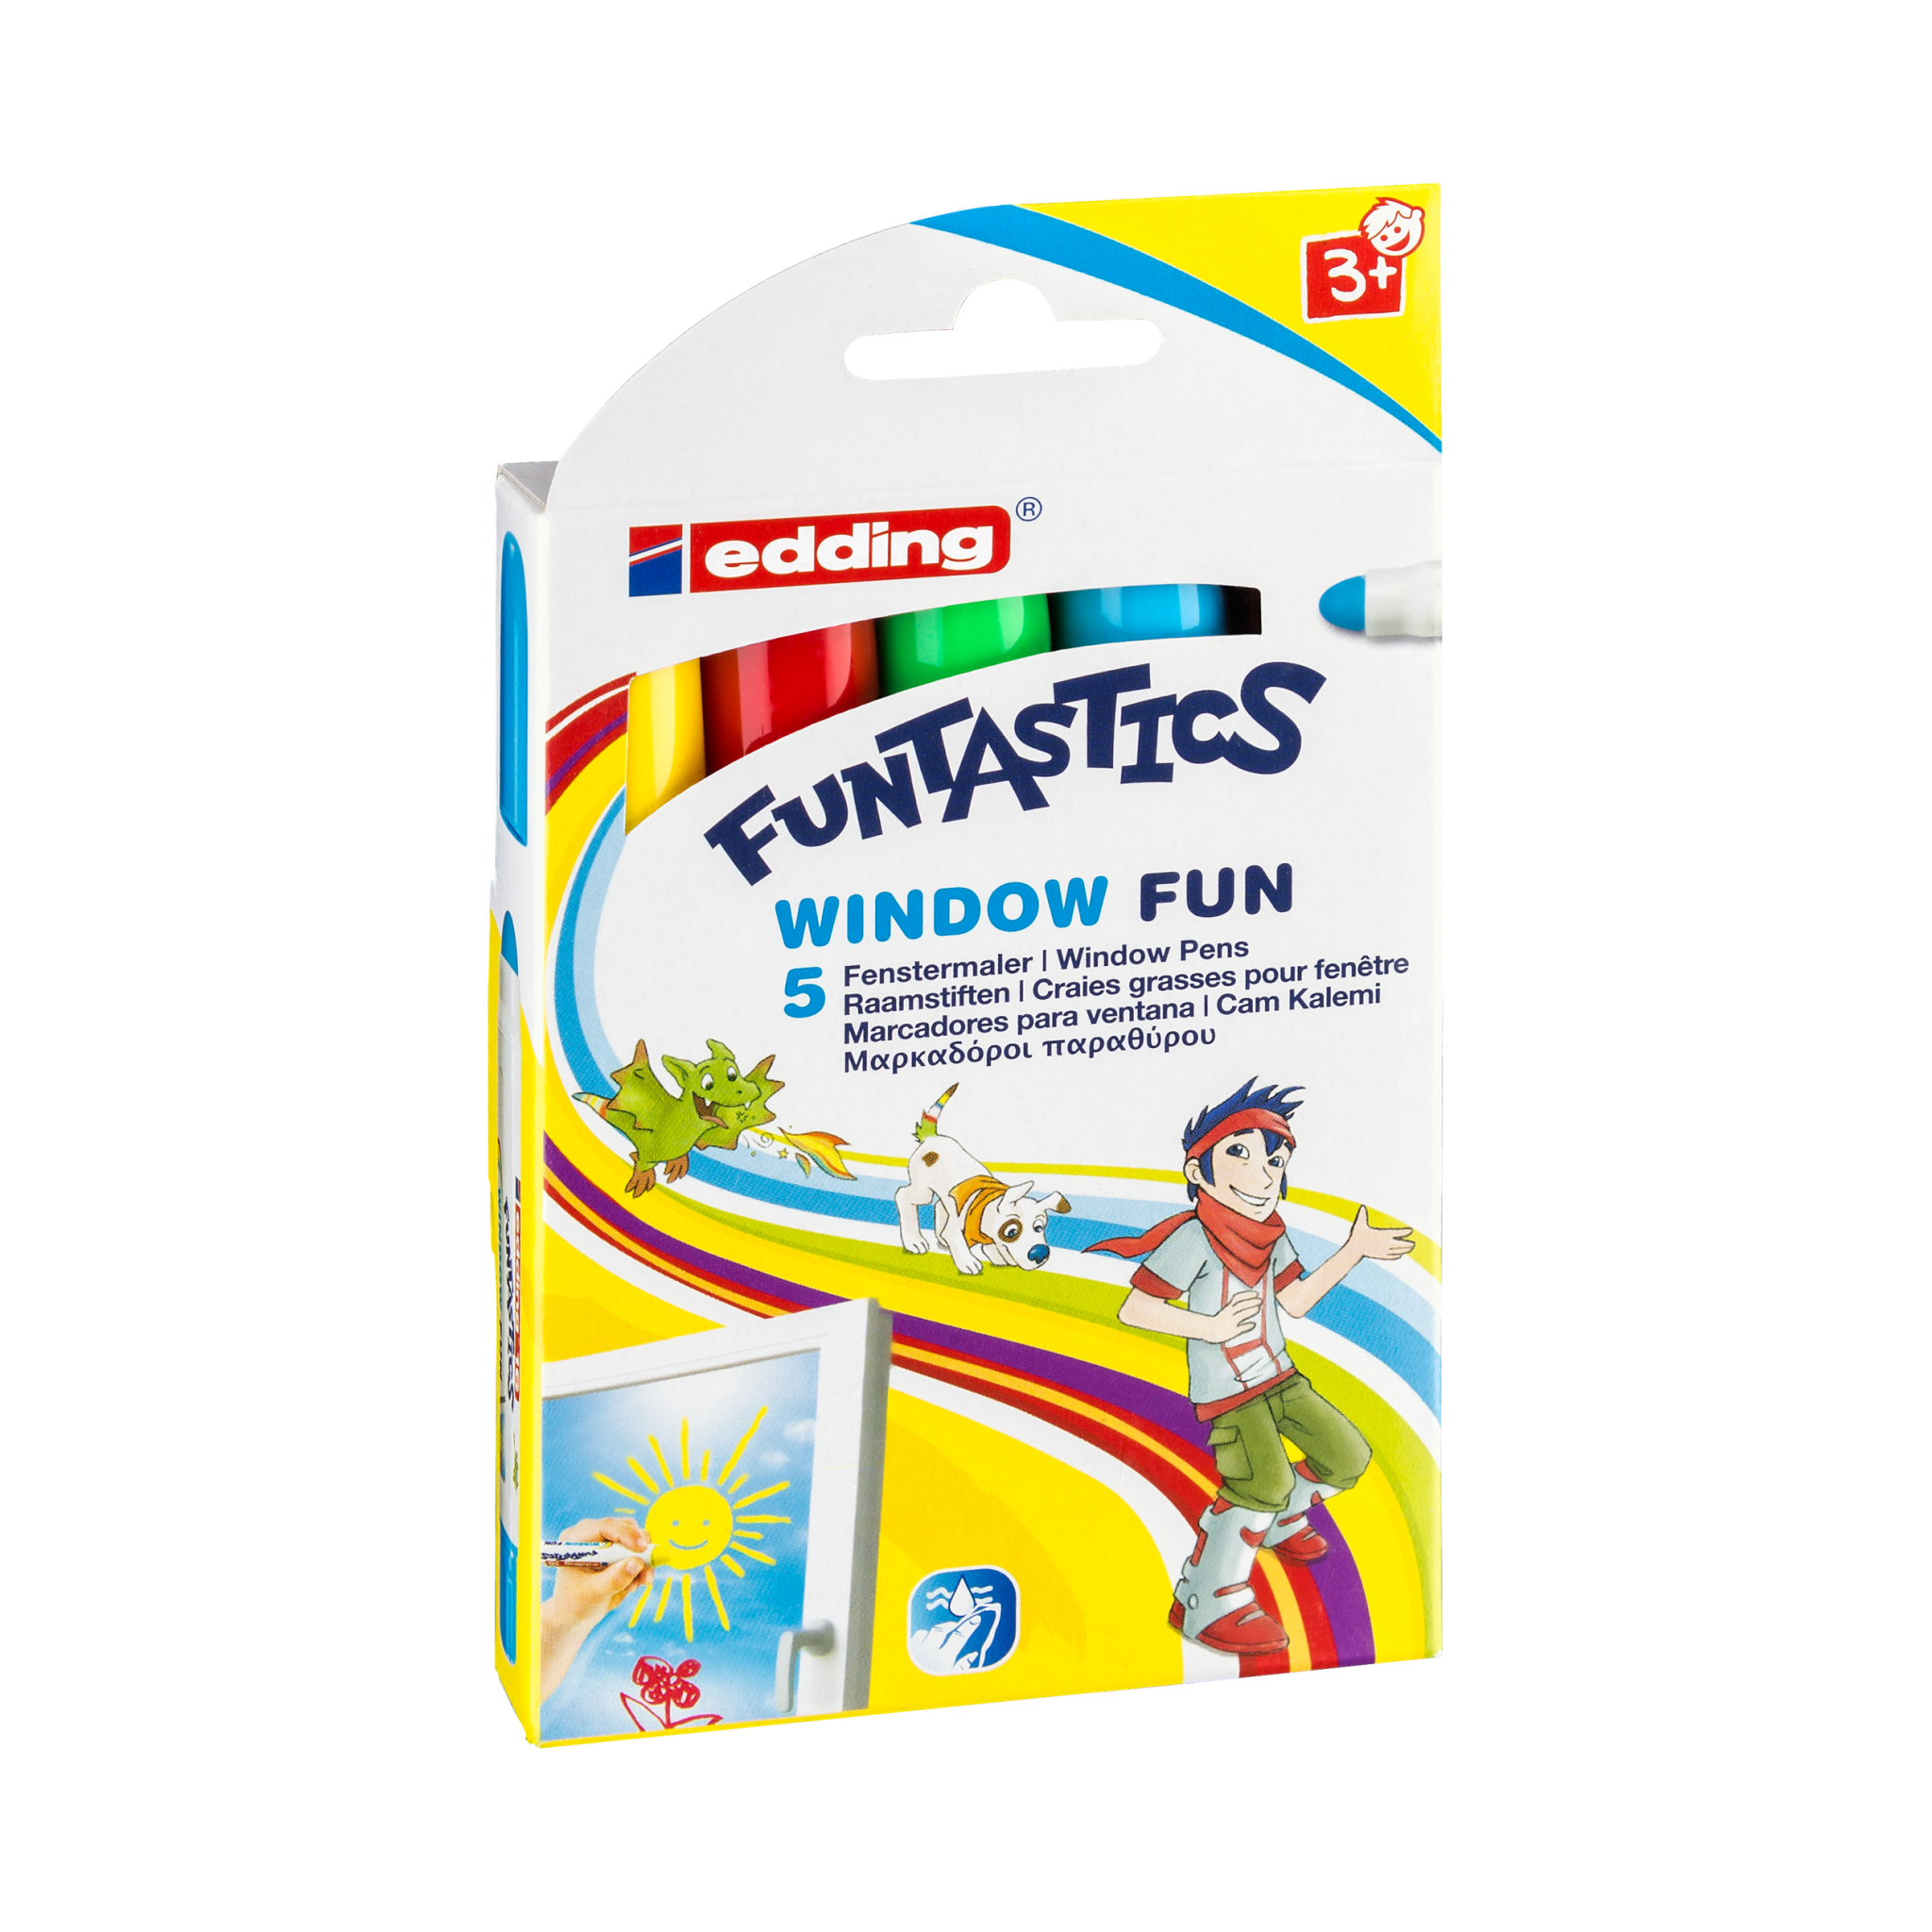 Produktbild von edding 16 FUNTASTICS WINDOW FUN Kinderfenstermaler